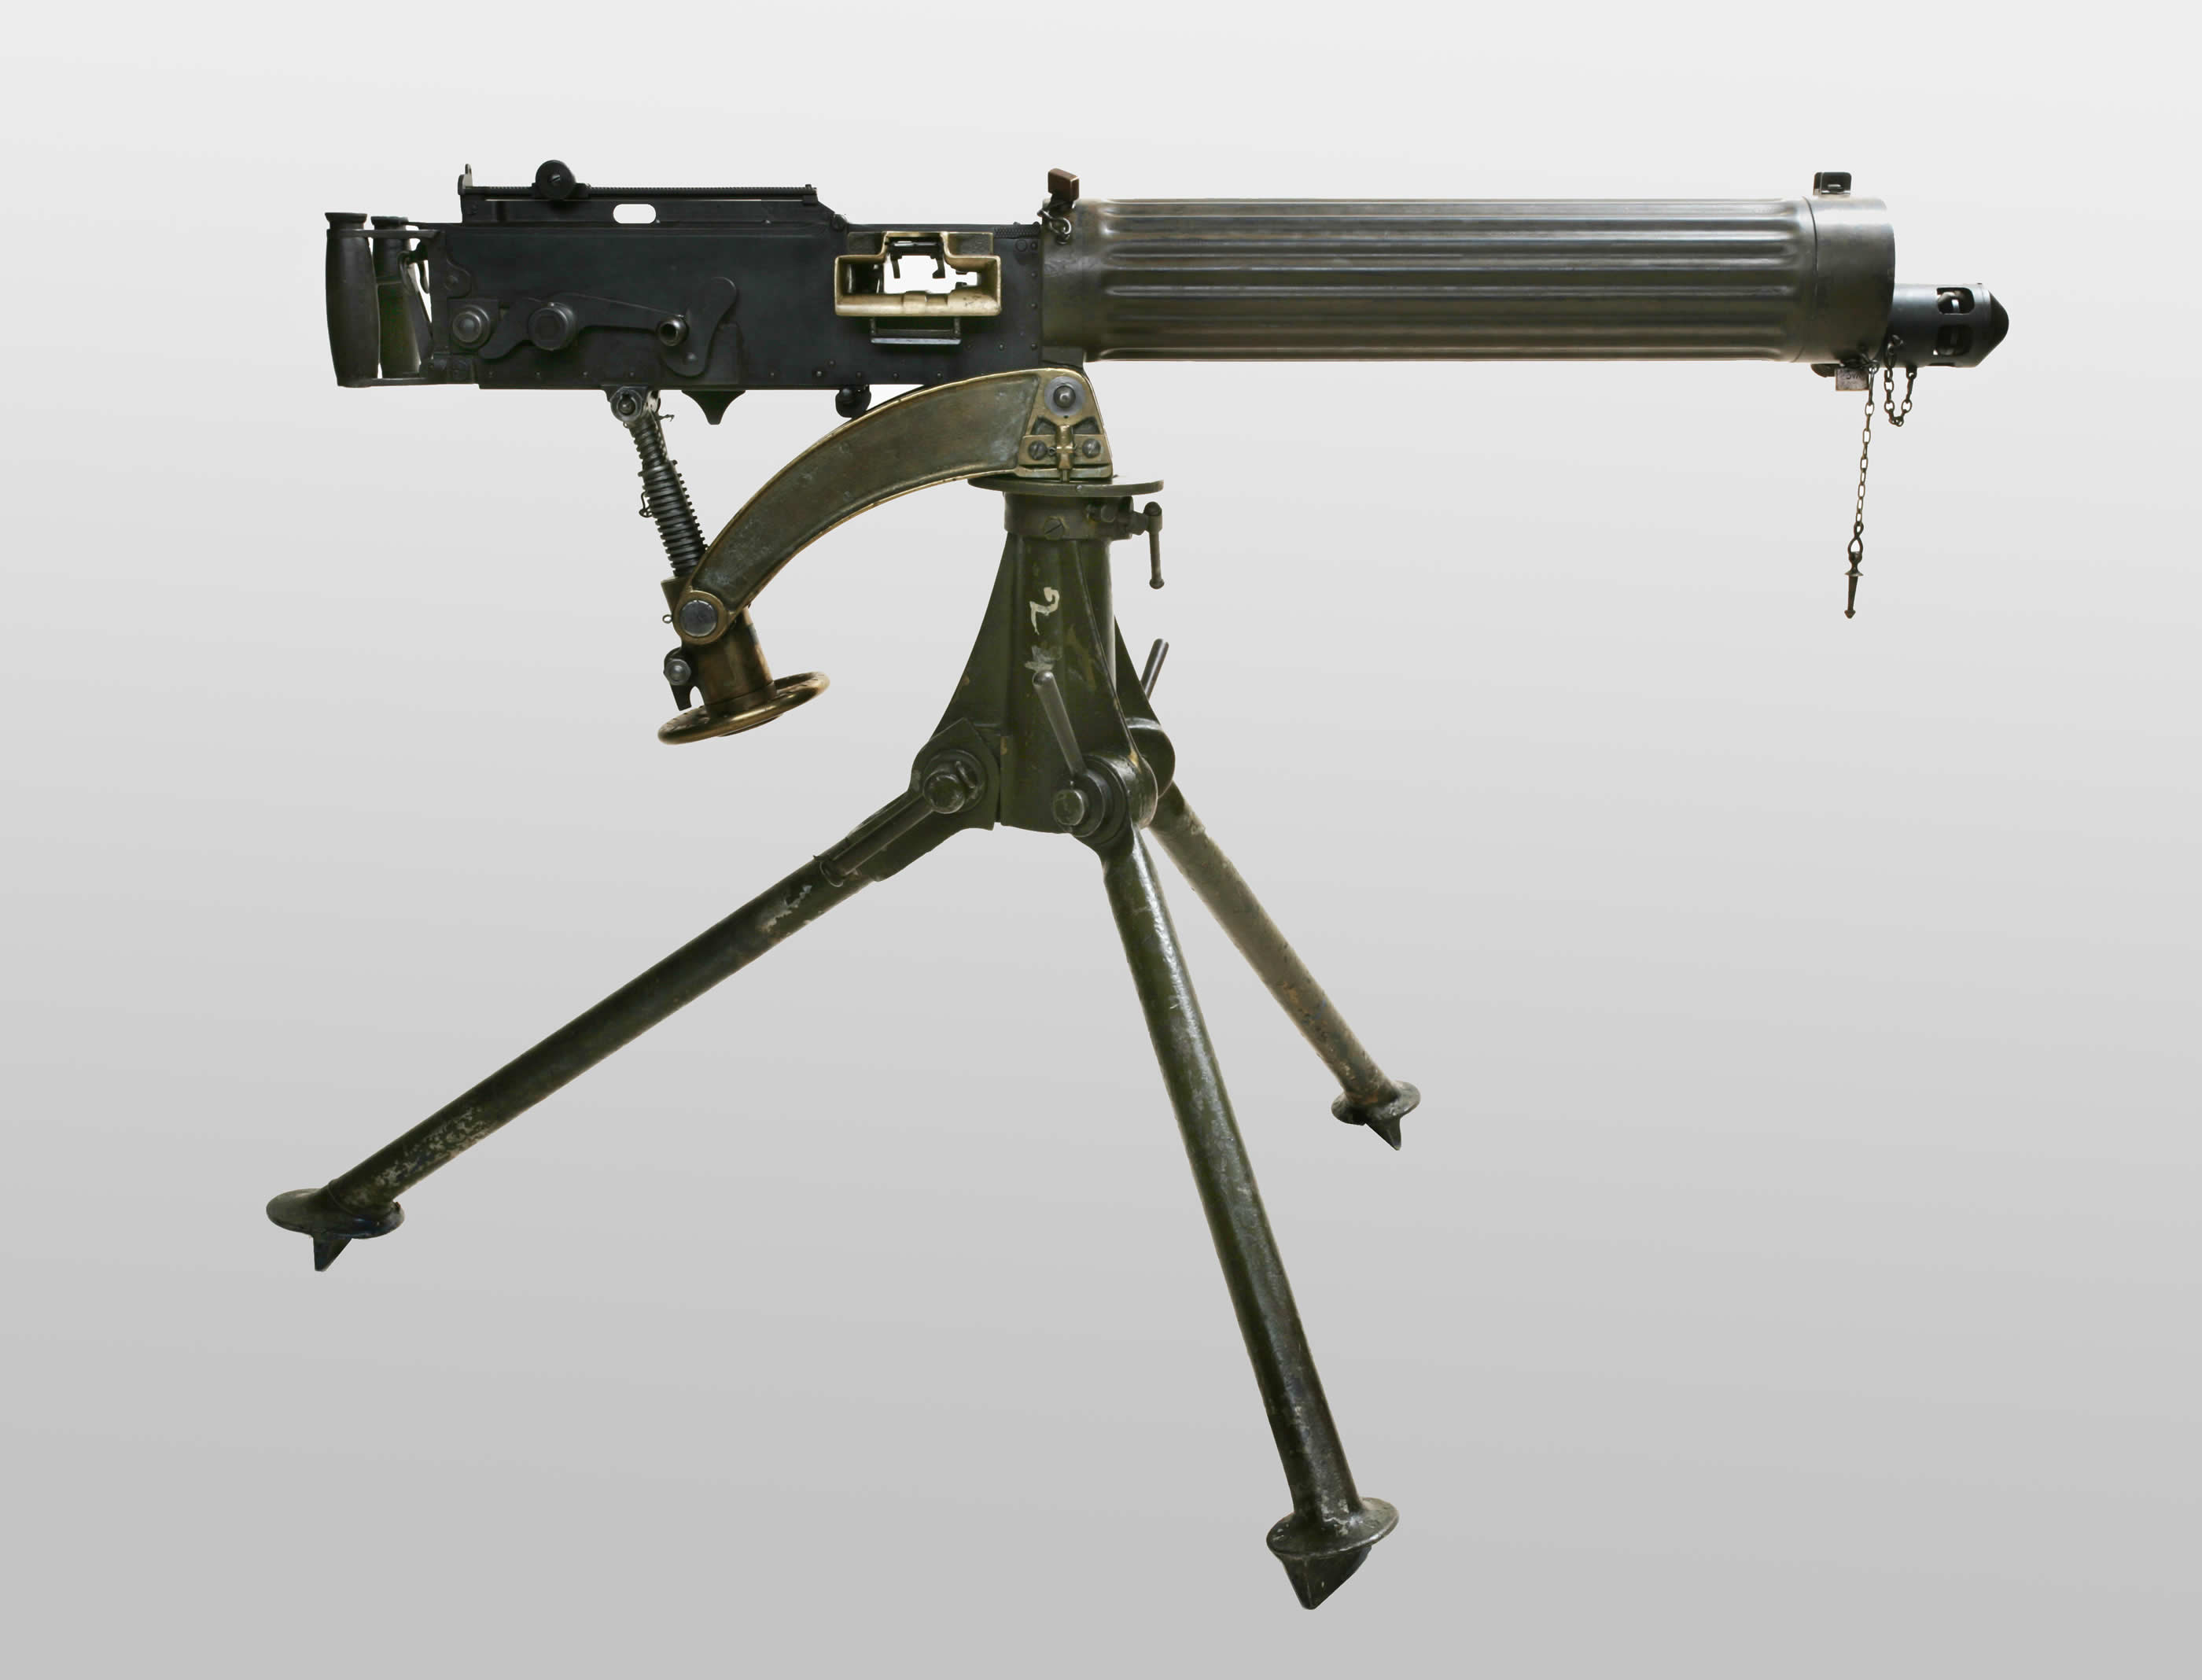 Vickers Machine-Gun